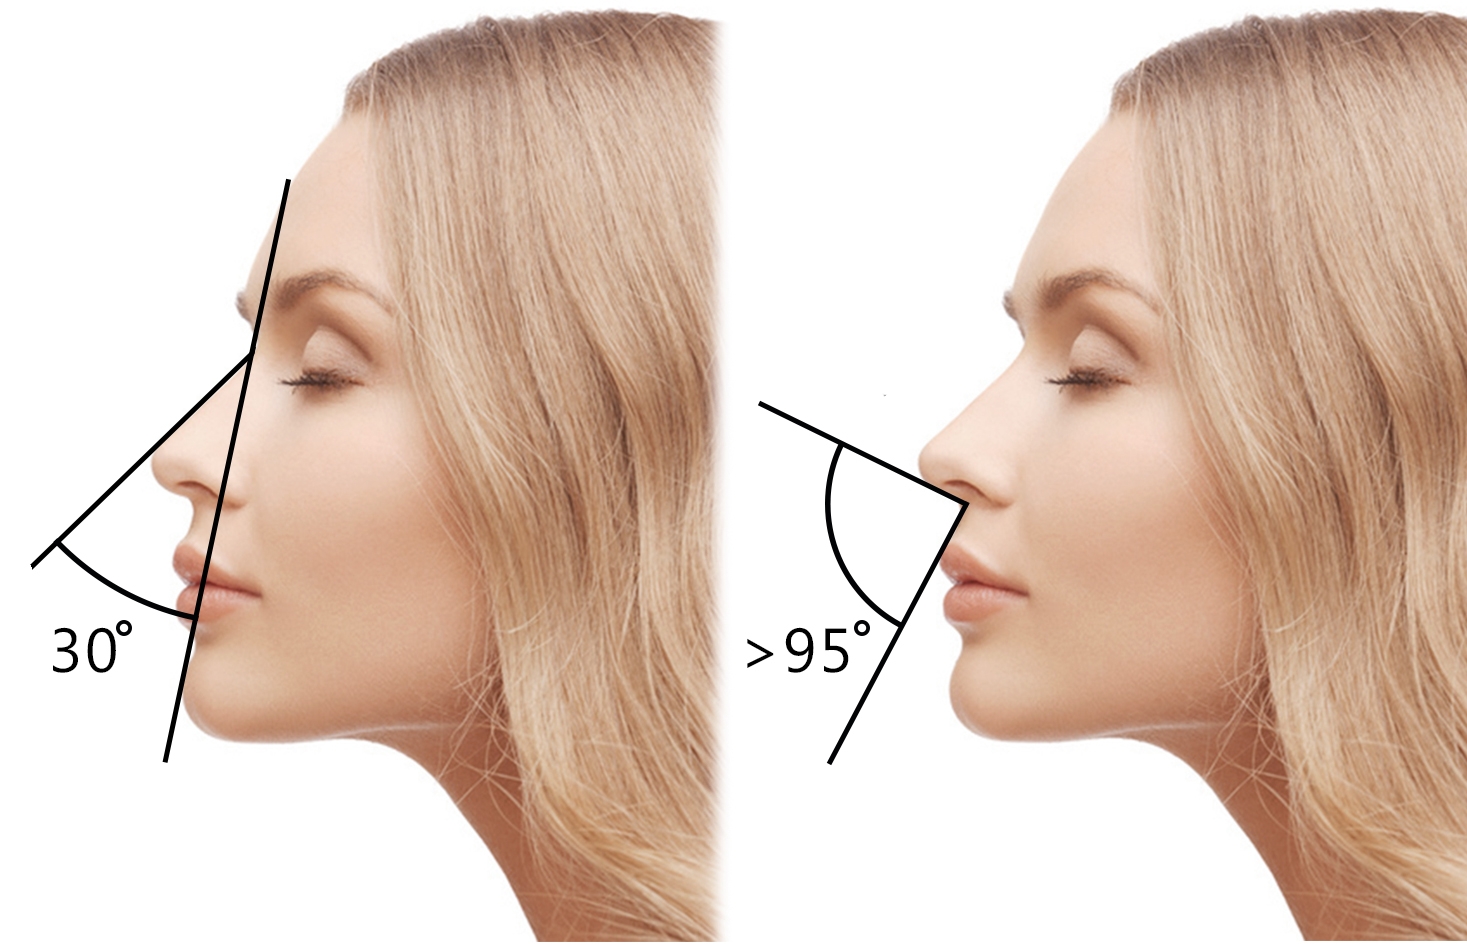 пропорции носа